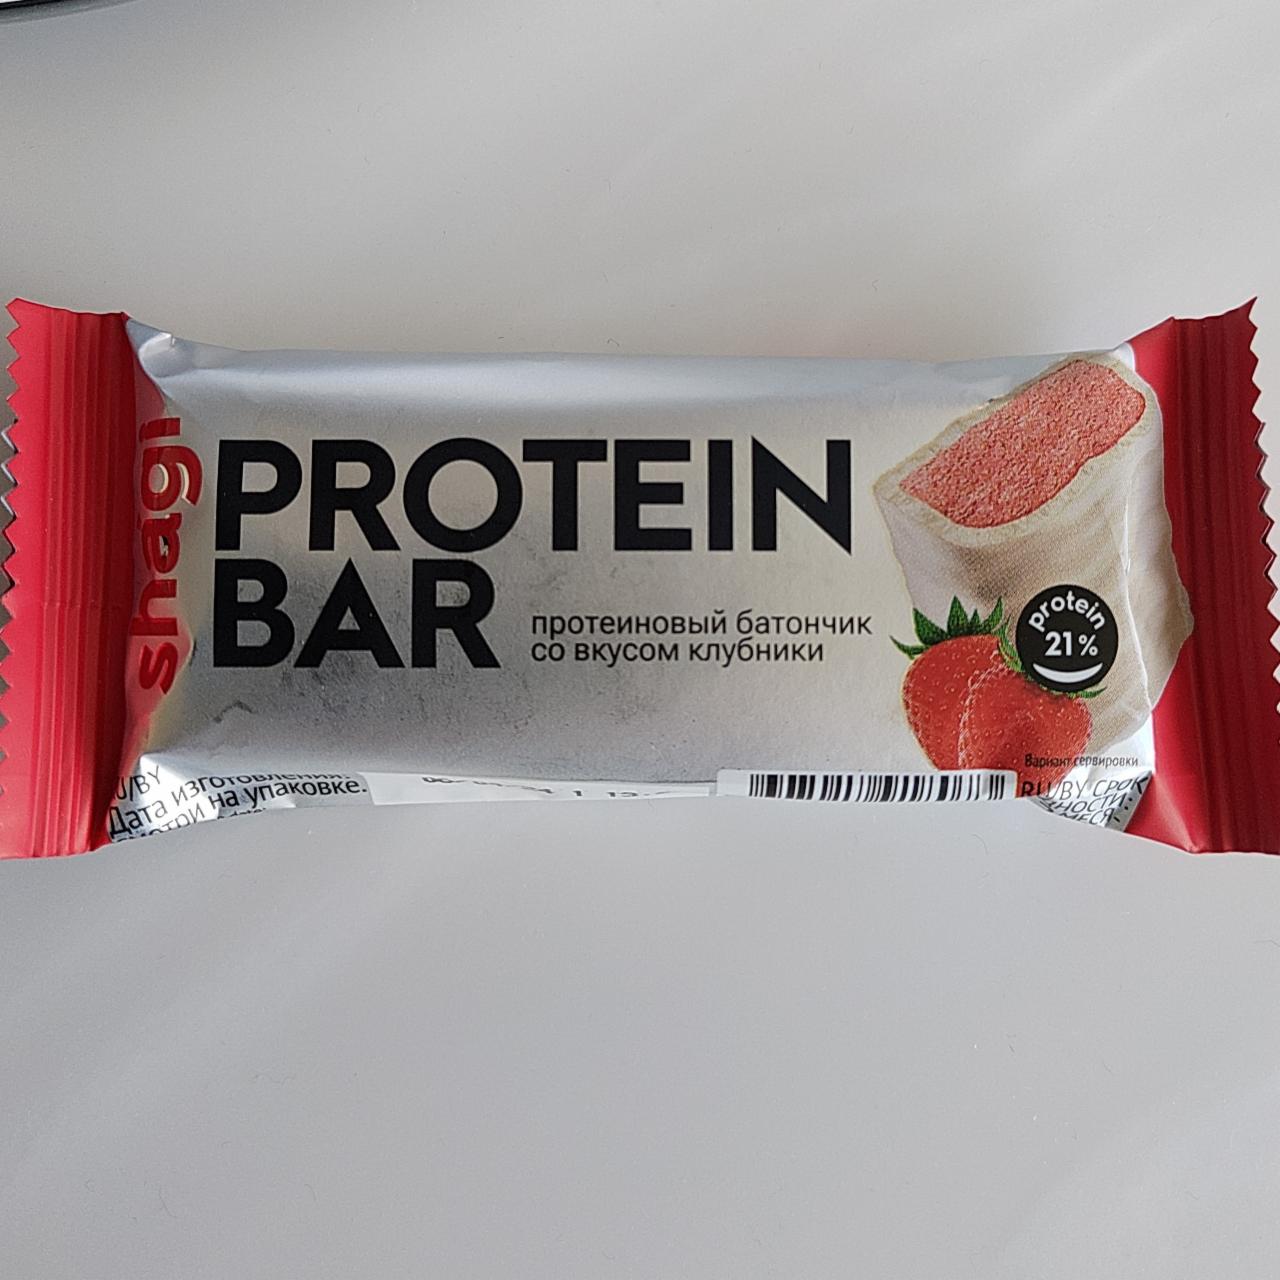 Фото - протеиновый батончик со вкусом клубники Protein bar